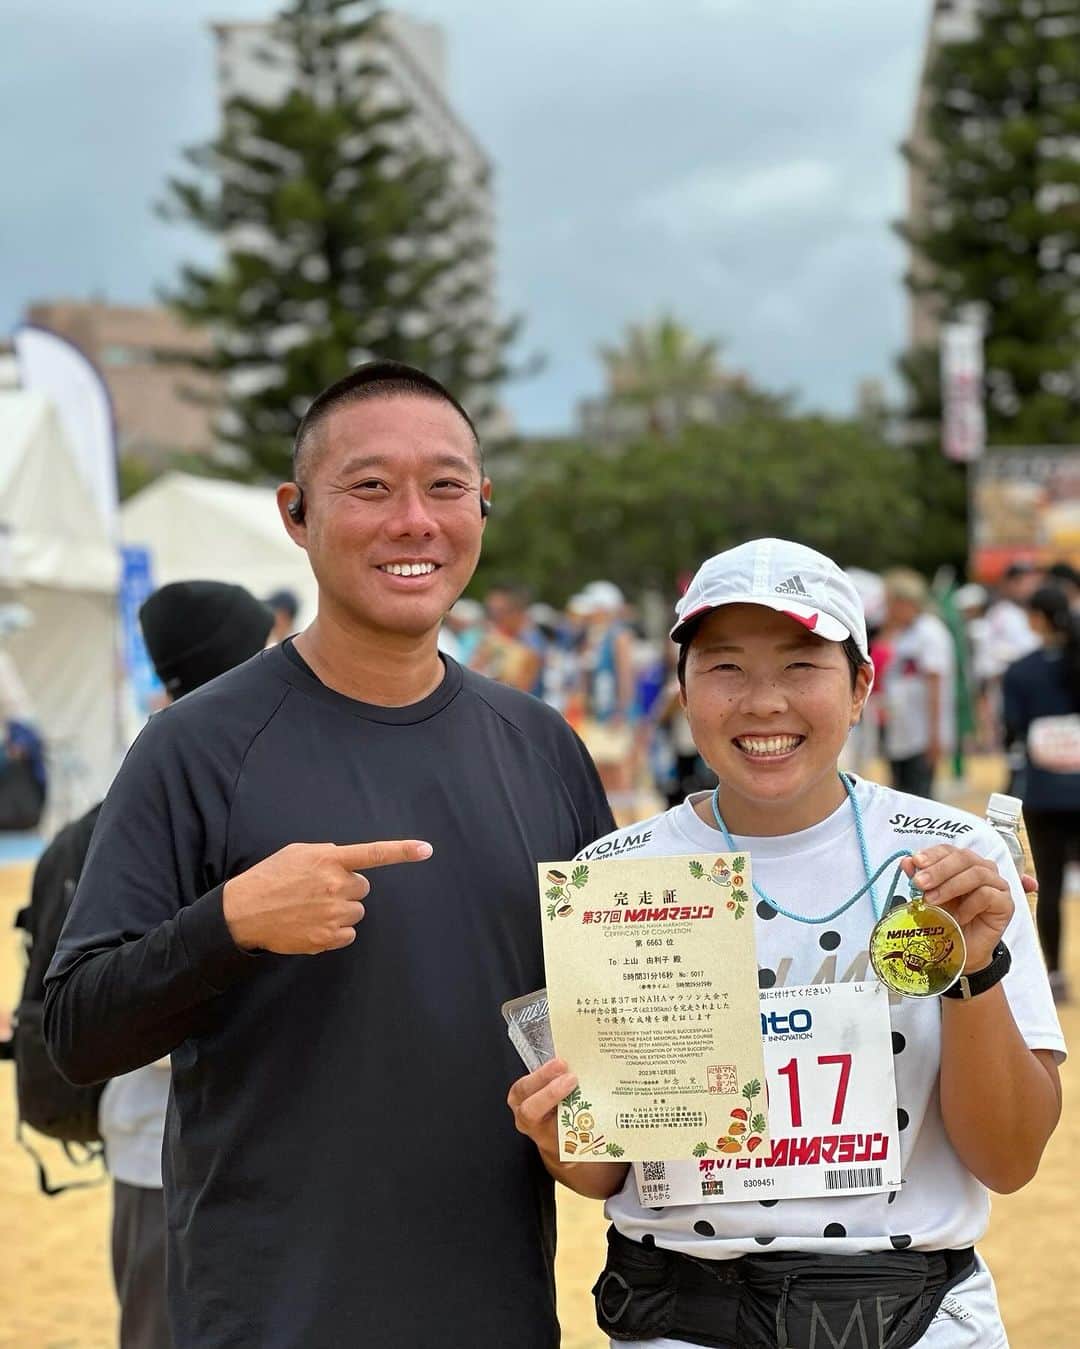 Yuri Sakuraiのインスタグラム：「先日、沖縄県で行われた 那覇マラソンに出走し、42.195kmを完走した上山選手！  決して、運動が得意ではない中で、 これまで3度のマラソンにチャレンジしてきて、 全て完走！というやり切る根性の持ち主です！  有難いことに連日お店が忙しくさせてもらっていて、 ほとんど練習する時間はなかったと思うのですが、 自分自身の新たな成長のため、 4年ぶり、4度目のフルマラソンへの チャレンジに至りました！  実は、スタートしてから1時間過ぎた10キロ地点で、 上山選手から 『足が攣ってしまって、走れなくなってしまいました。』と連絡が来ていました。  残りの距離は、32キロ。  一度攣ってしまうと繰り返してしまうことも多く、 今回はゴールすることが難しく、 リタイアしてしまうのではないかと思ってました。  しかし、彼女は諦めることなく、 沿道の方の応援の後押しや、 自分自身が積み上げてきた日々をパワーに変えて、 少しずつ足を進めて、ゴール地点まで辿り着き、 完走したのです！  フルマラソンは、運動ができる出来ないではなく、本当に自分との戦いだと思っています。 苦しい時、きつい時に、 どこまで頑張れるのか。 やり切れるのか。  自分の足でしか前に進めず、応援してくれる方はいても、自分自身でしかゴールに向かえないので、 本当に自分が出る挑戦だと思っています。  東京のカフェの立ち上げも一緒にしてきて、 気づけば15年以上の月日を共にしてきた上山選手！  出会った当初、自分に自信がなく、 髪型もファッションも隠すスタイルが 多かった上山選手ですが、  お客様や関わる方への喜んで頂きたいという 想いは人一倍あり、 喜びのために 人よりも頑張れるモチベーションを持っていて、 様々な経験をし、少しずつ時間をかけて 自信を積み上げてきて、 今まで何度もミラクルを起こしてきました！  自信は、 自分が積み上げた日々でしか持つことができない分、 手に入れることが簡単ではないですが、 手に入れることができるとかけがえのないものに なると思っています！  オープン当初は、 自分たちのお店をお客様に 選んでいただくことができず、 先の見えない苦しい日々を過ごしていましたが、 小さなMK CAFEという場所から、 どんな場所でも活躍できる人になって欲しい！ という思いを持って仲間たちと関わり、 こうして壁を越えて成長する姿を見ることができ、 めちゃめちゃ嬉しいです！  上山選手！お疲れさまでした！ 今後の活躍も楽しみにしています！  #mkcafe#鯖バーガー#鯖#沖縄#ウミカジテラス #瀬長島#沖縄人気スポット#沖縄観光#沖縄カフェ #沖縄グルメ#沖縄南部#沖縄南部カフェ#okinawa#okinawajapan#okinawalife #okinawafood#hamburger#family」